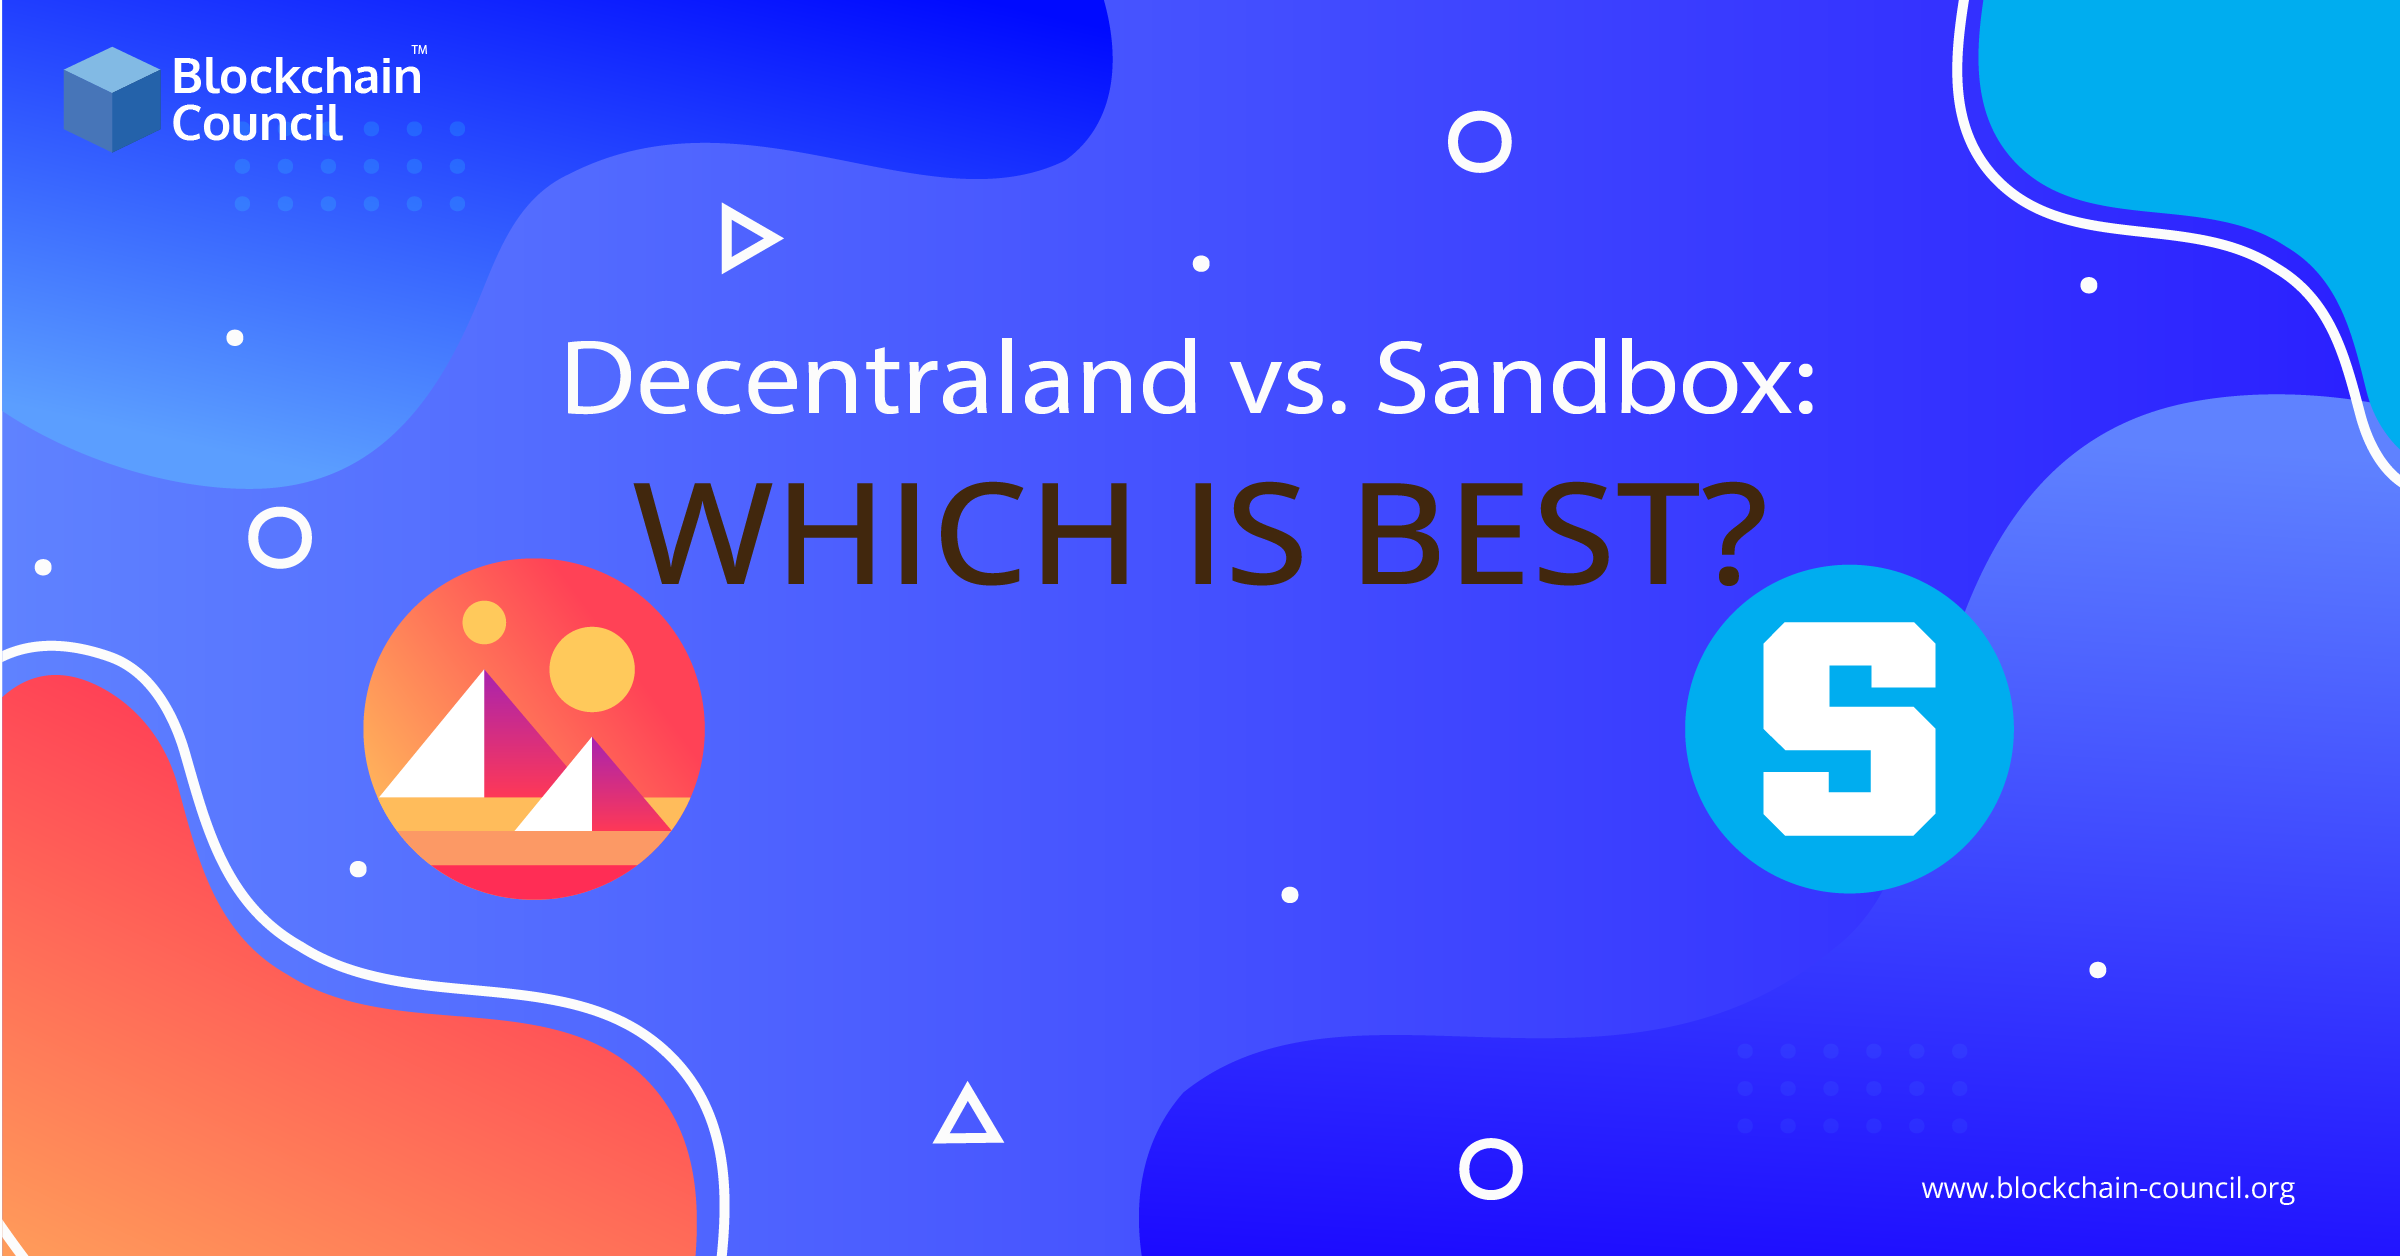 Decentraland vs. Sandbox Which is best